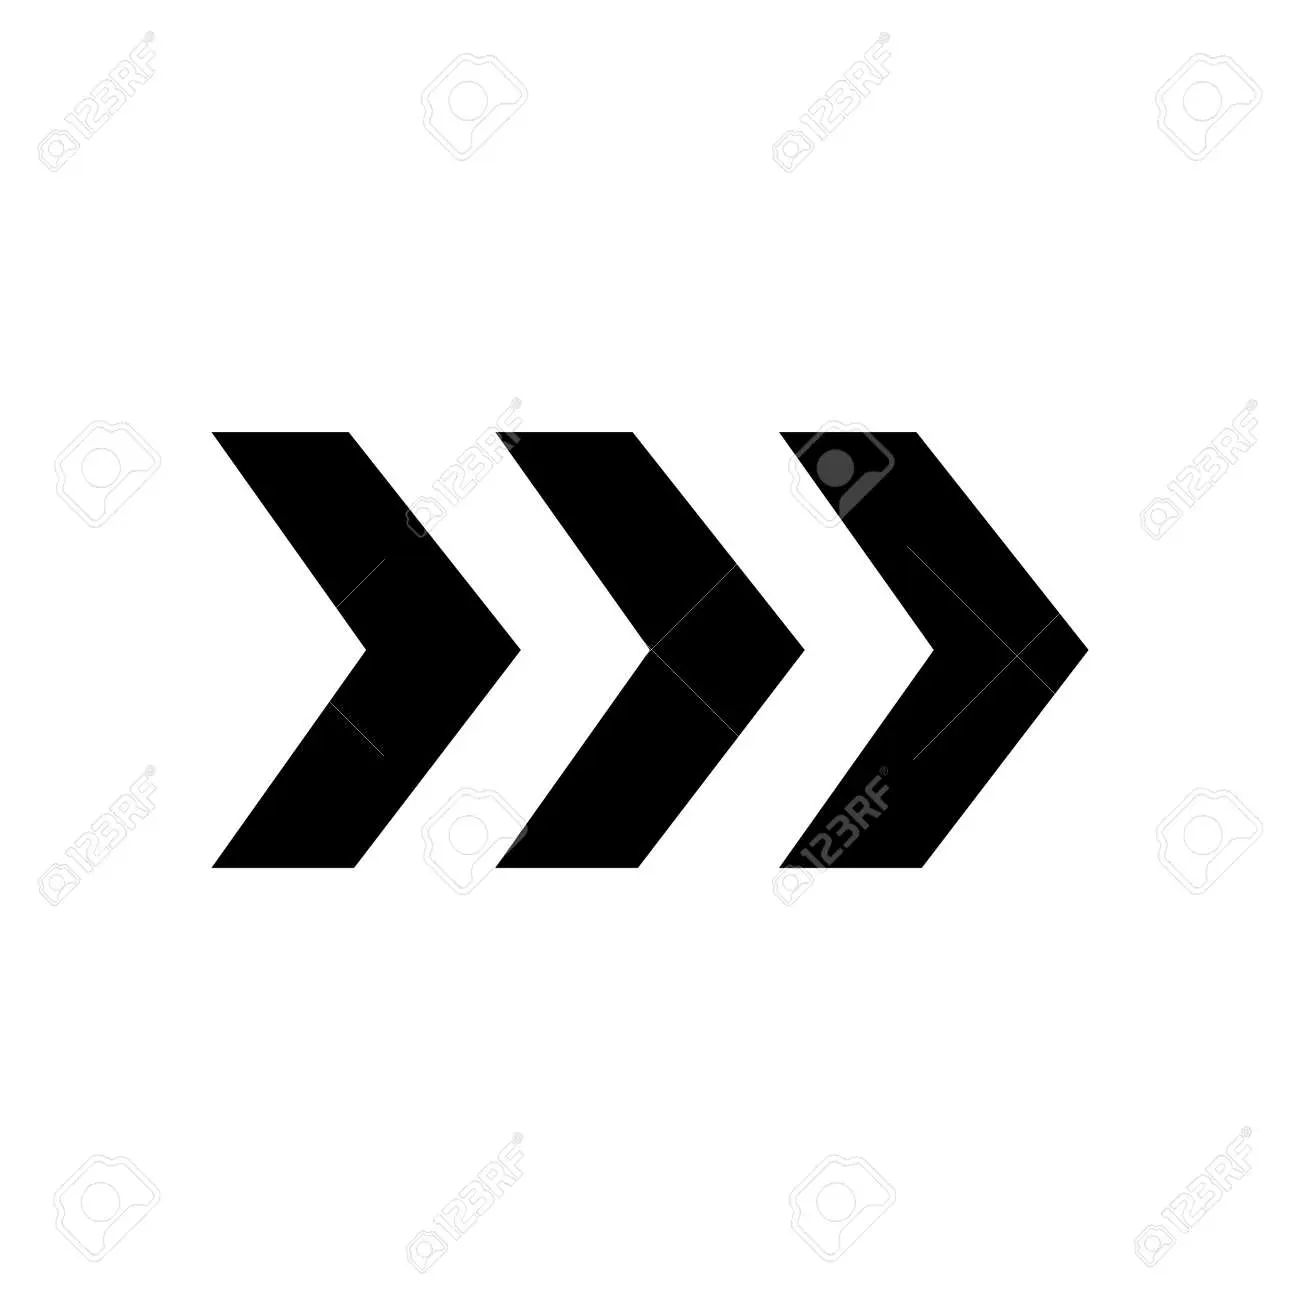 imagen de tres fletas guntan con fondo blanco - Cómo unir letras para un logo